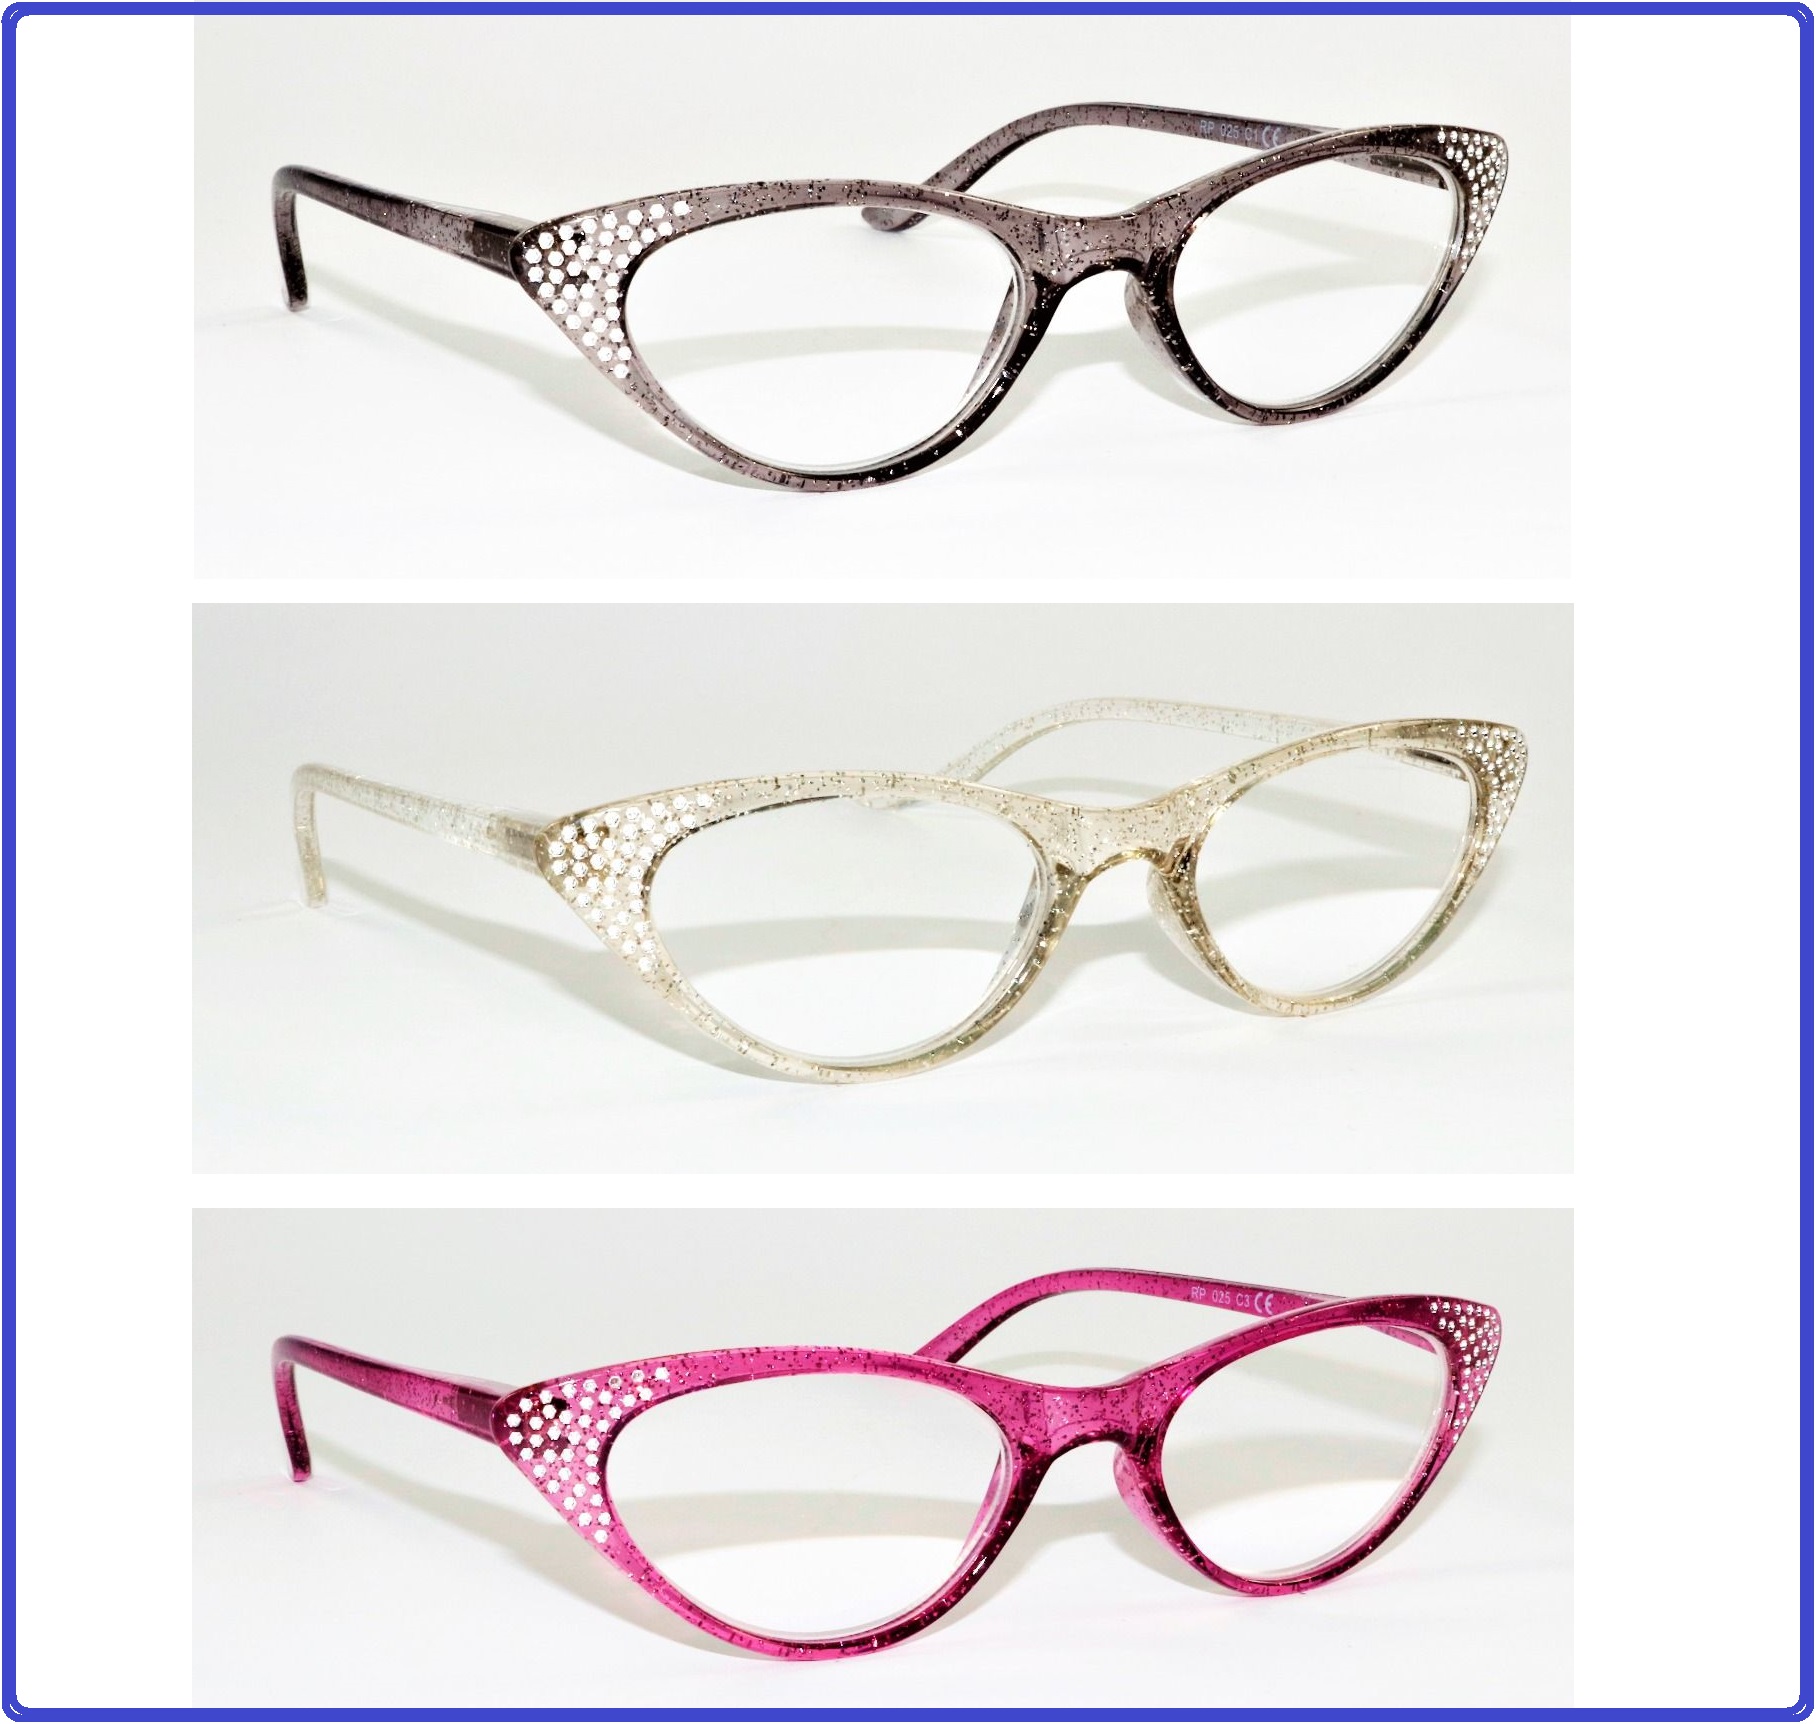 occhiali da lettura a occhi di gatto con strass tascabili, occhiali da vista donna strass per leggere a occhia di gatto, occhiali da vicino con strass cat eye a gatta, occhiali per vicino colorati da lettura, occhiali per leggere con glitter e strass a occhia di gatto colorati viola trasparenti e neri, occhiali per presbiopia a gatta colorati, +1 +2 +3 +1.5 +2.5 +3.5 1,5 2,5 3,5 1 50 2 50 3 50